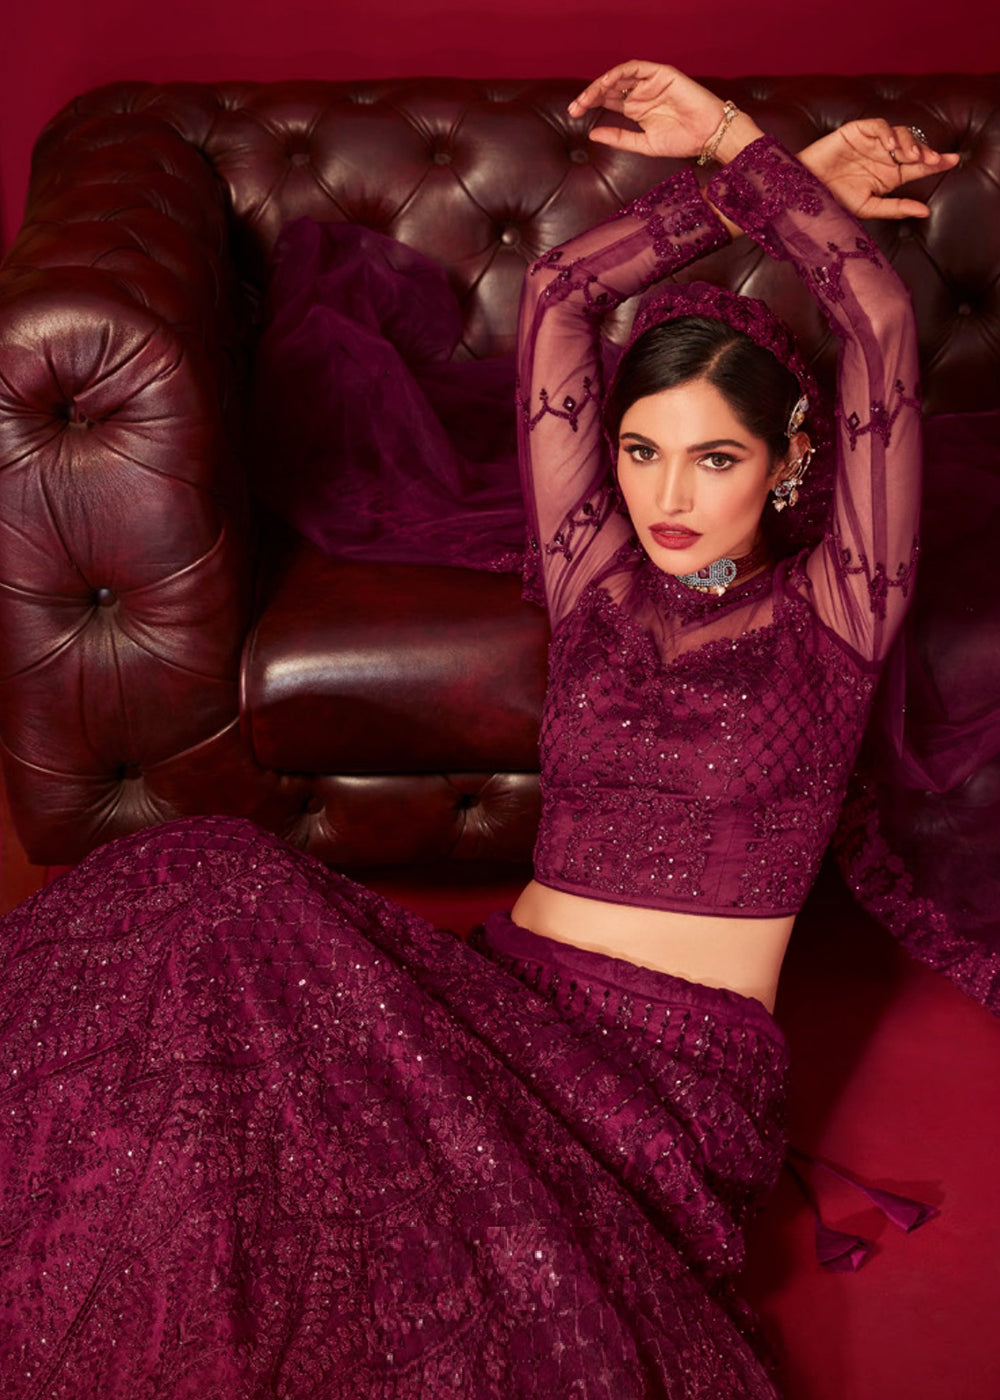 Buy Now Bridal Purple Resham & Stone Embroidered Wedding Lehenga Choli Online in USA, UK, Canada & Worldwide at Empress Clothing.